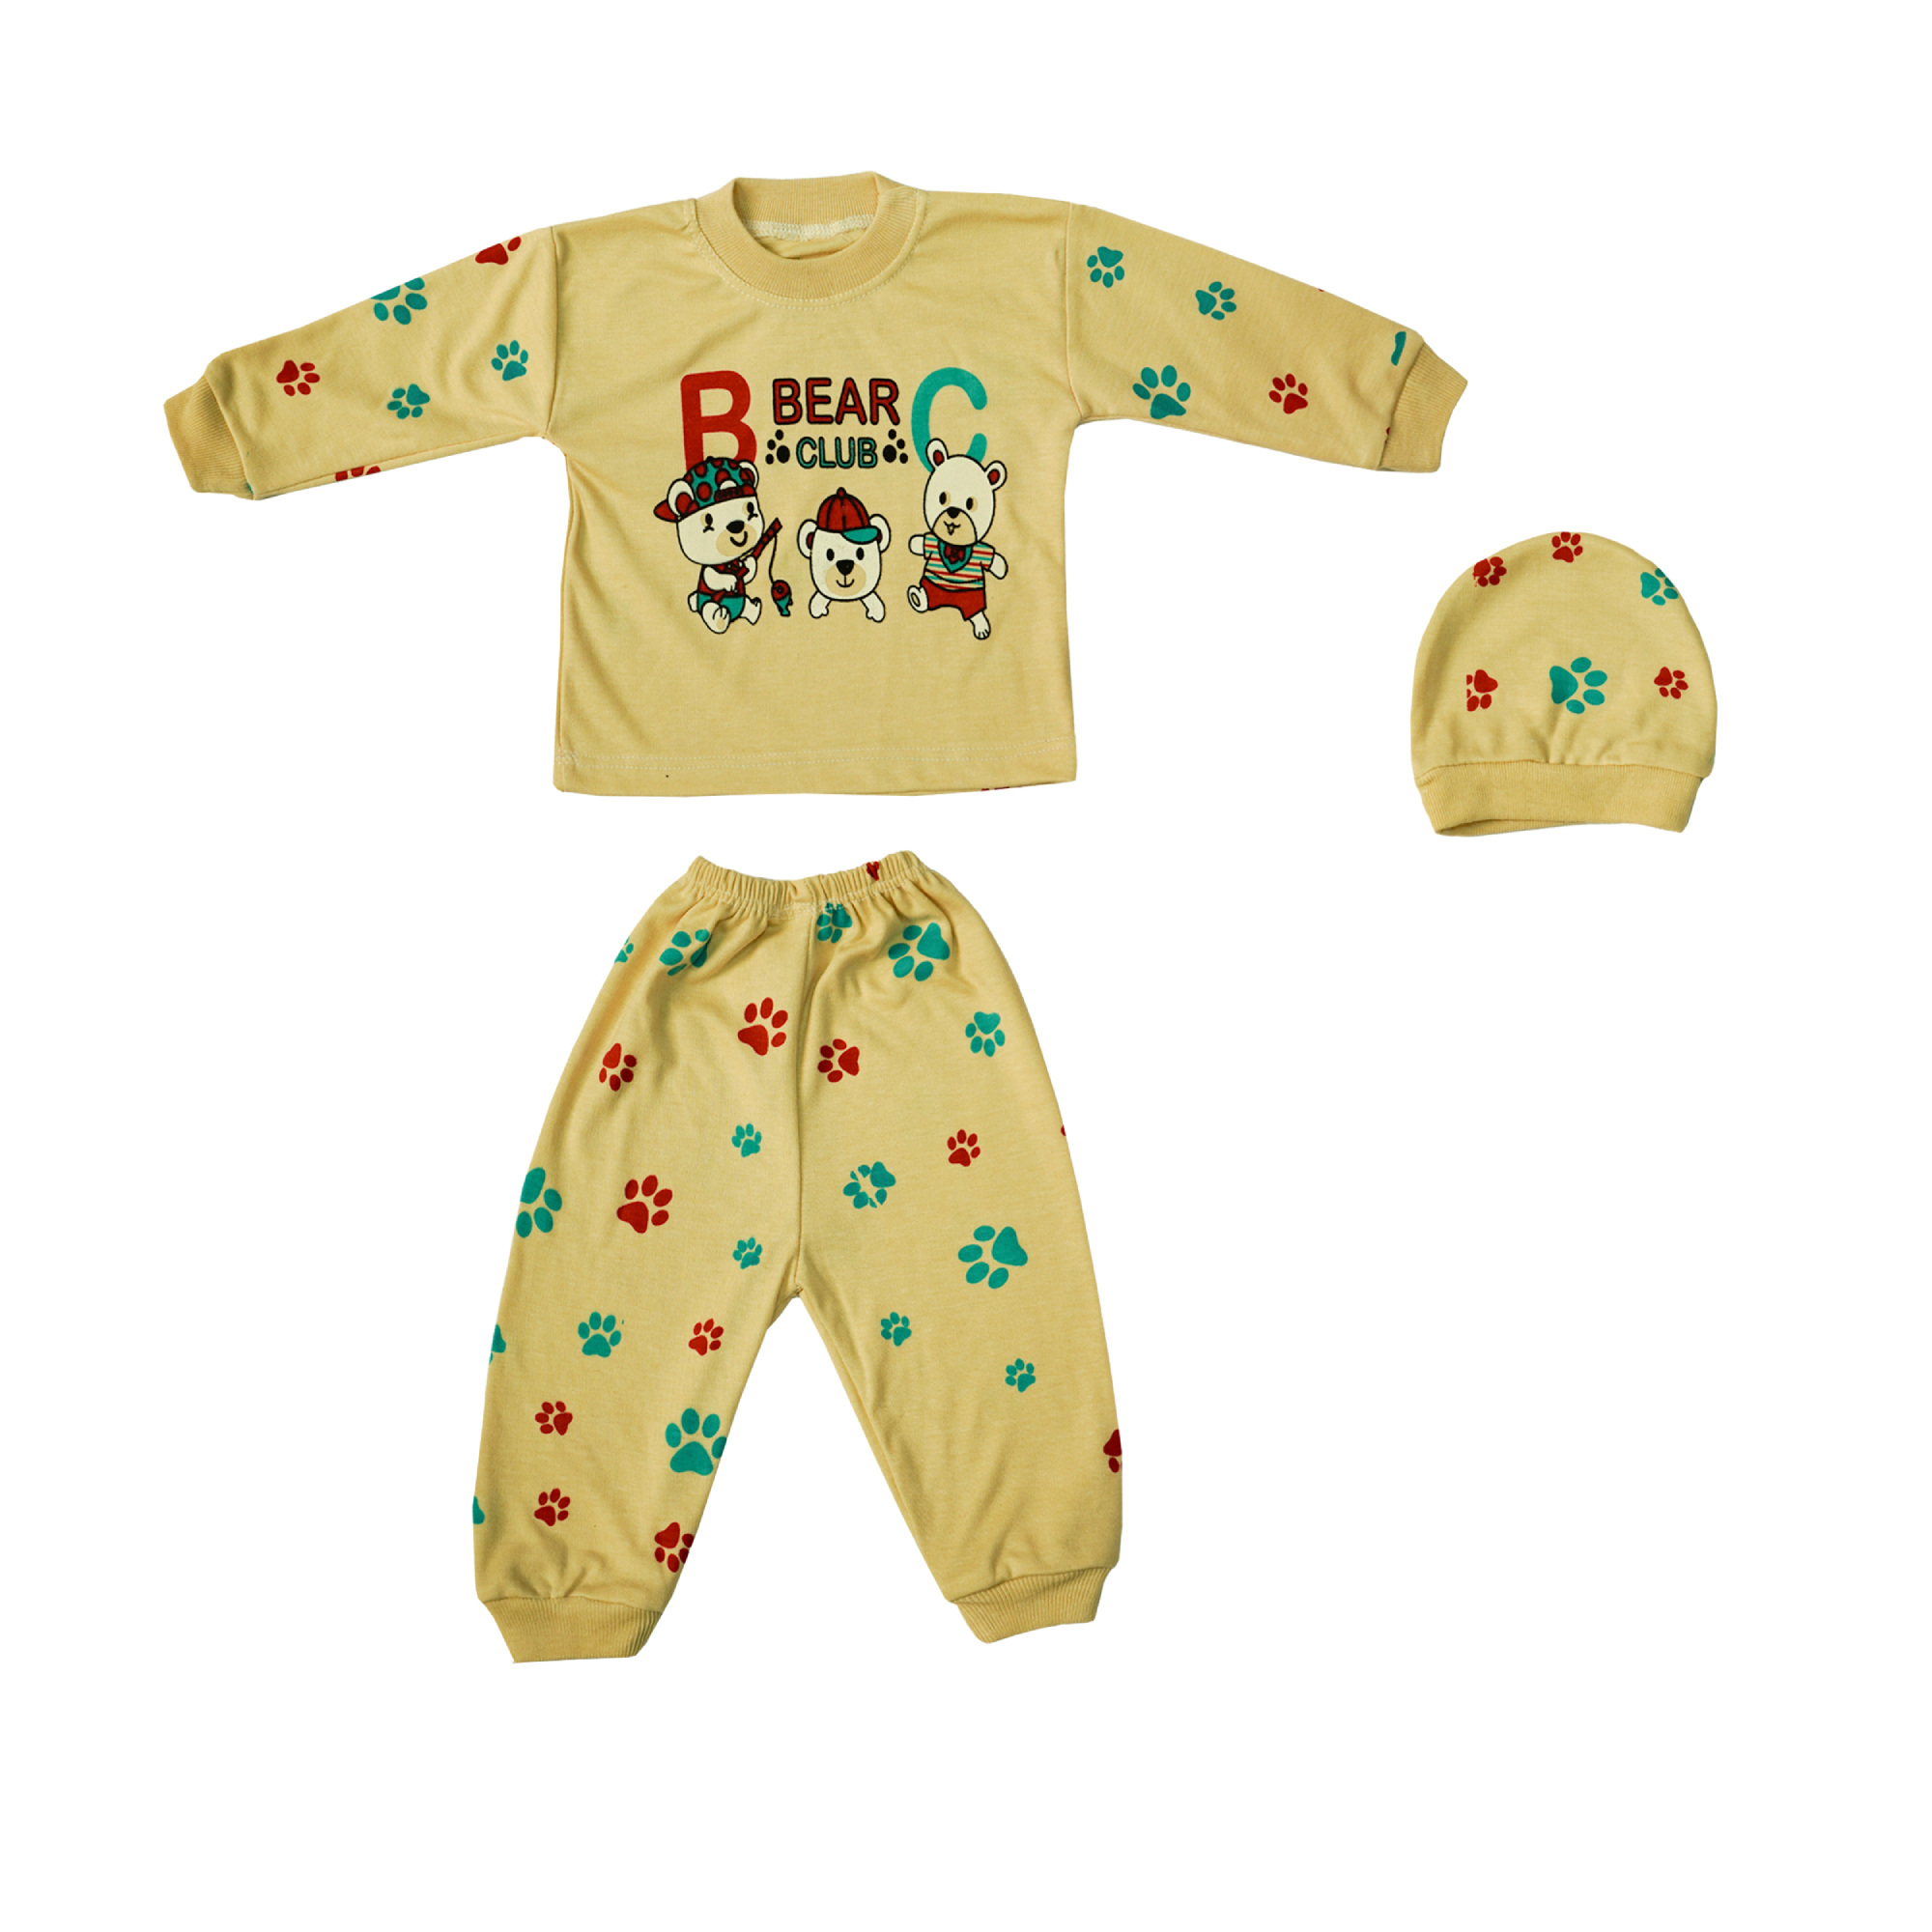 ست 3 تکه لباس نوزادی مدل خرس های بازیگوش کد 7 رنگ نخودی